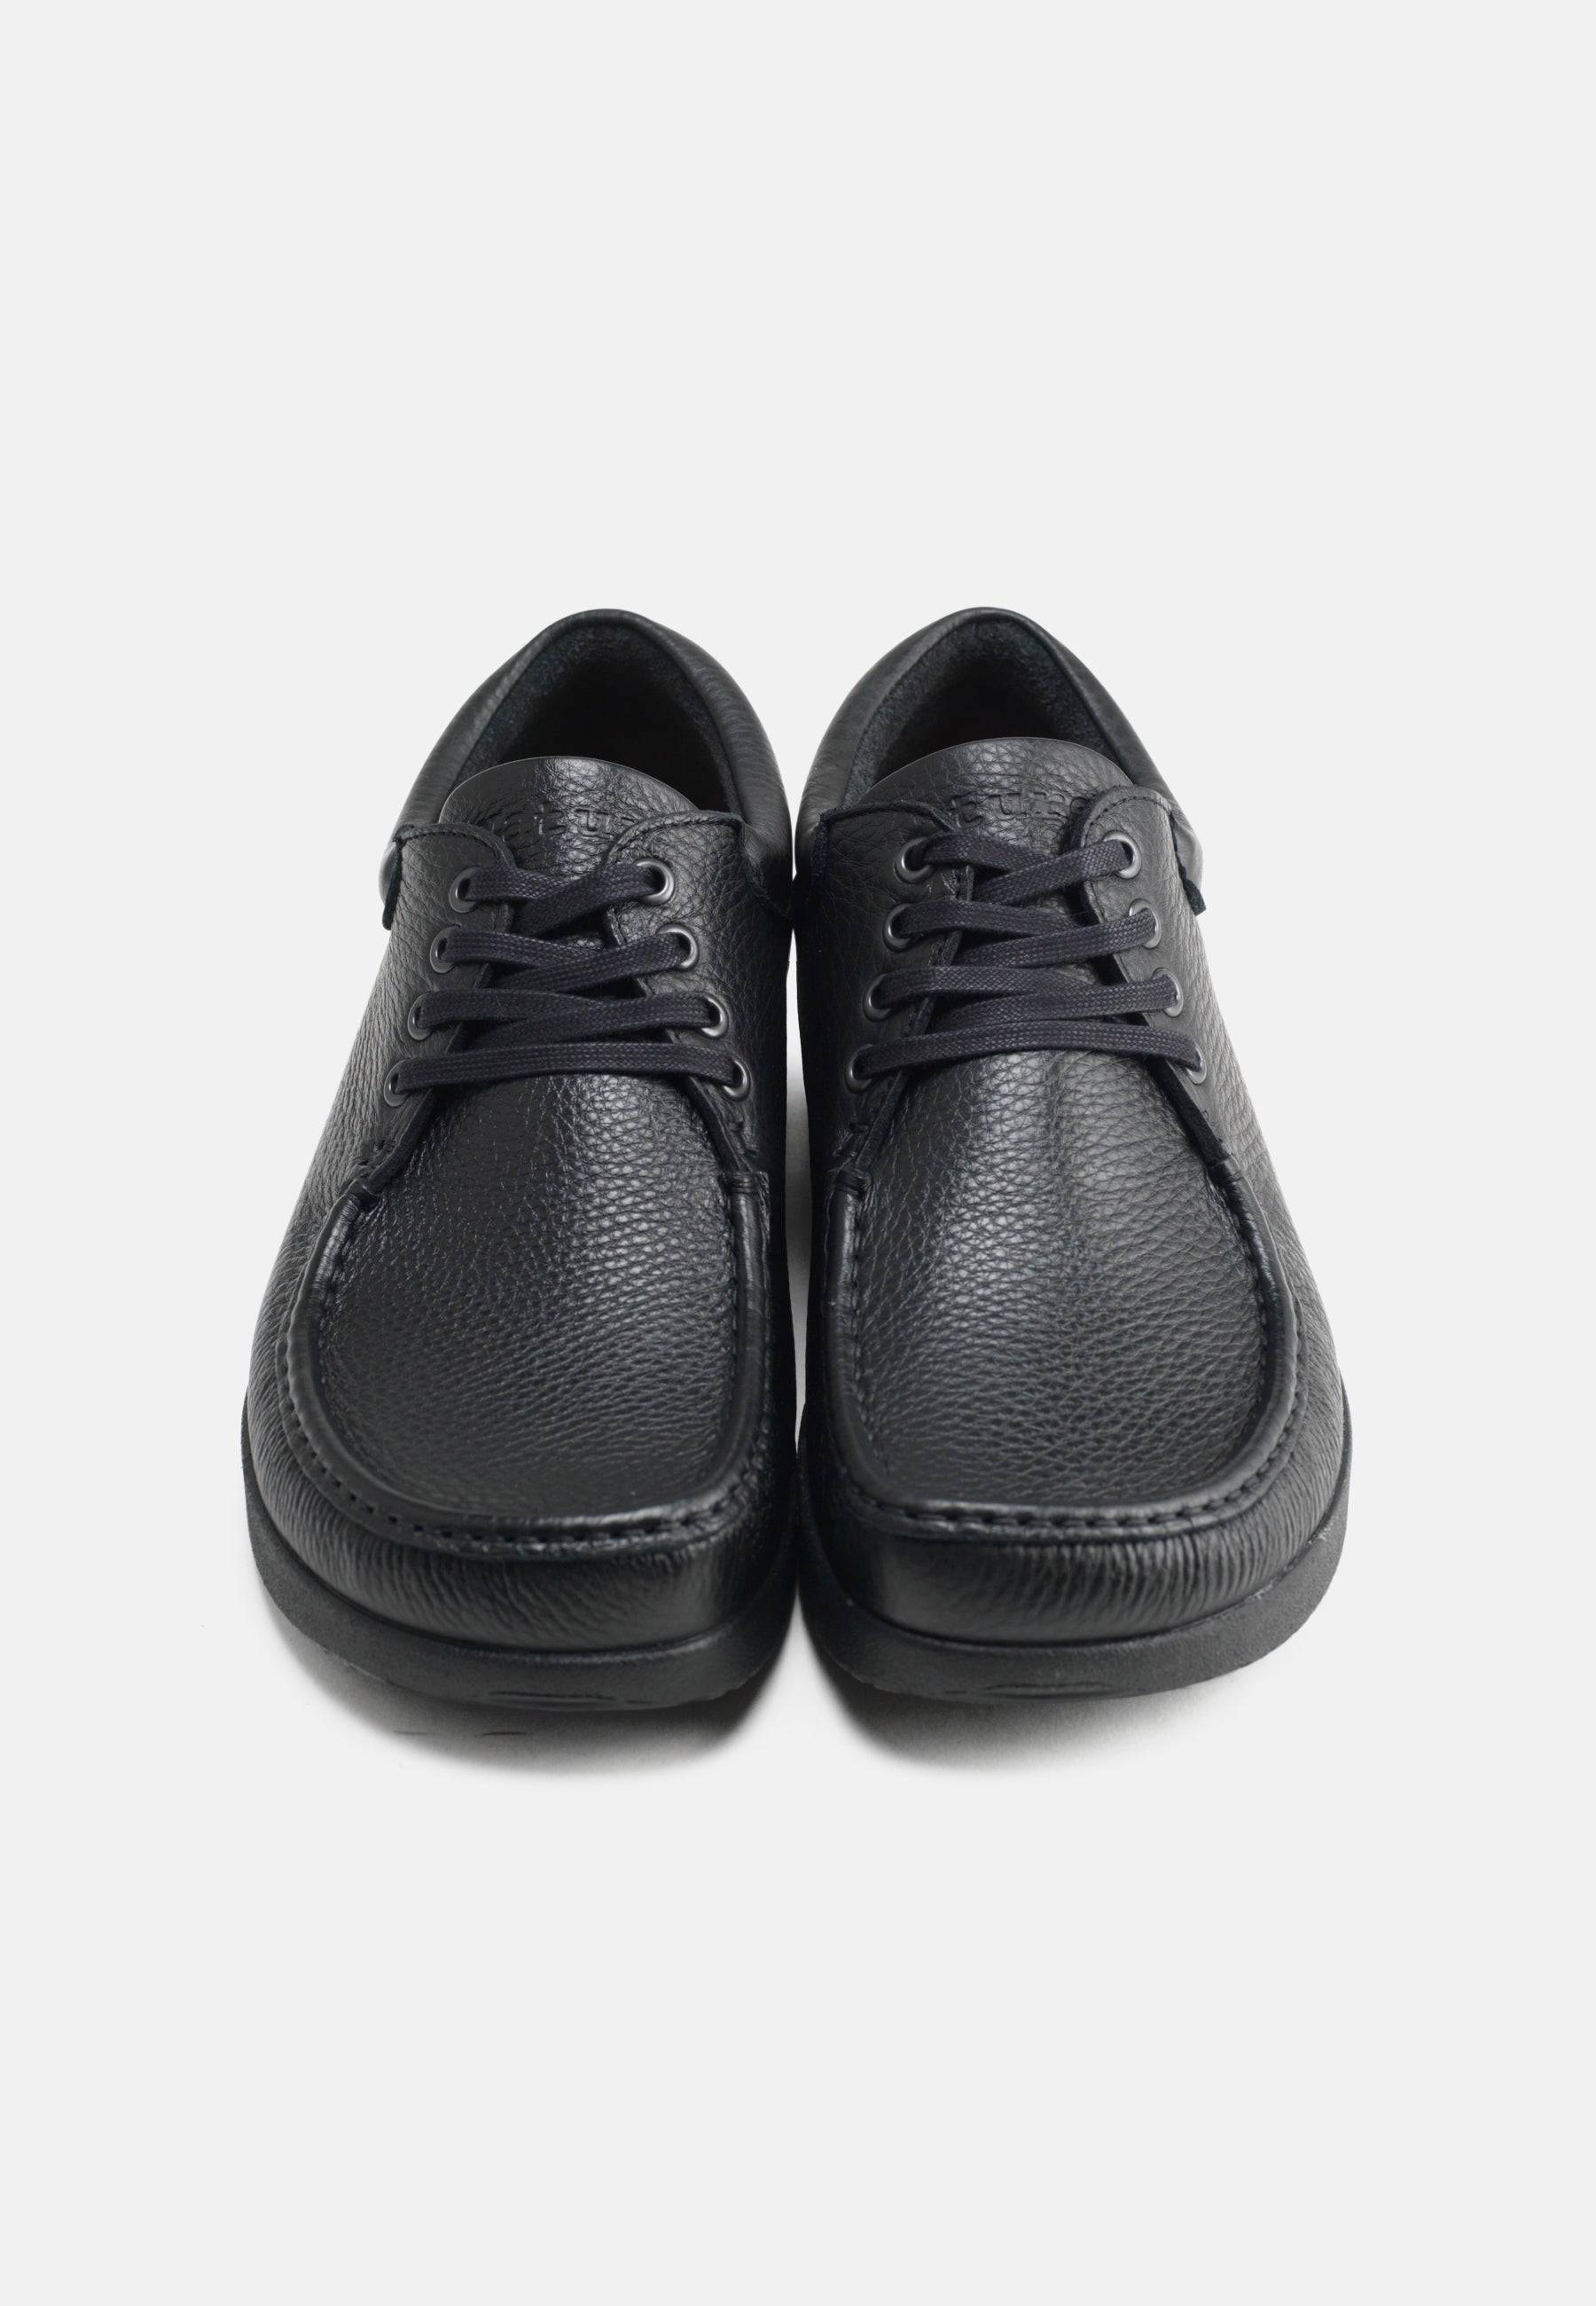 Arne Shoes Leather - Black